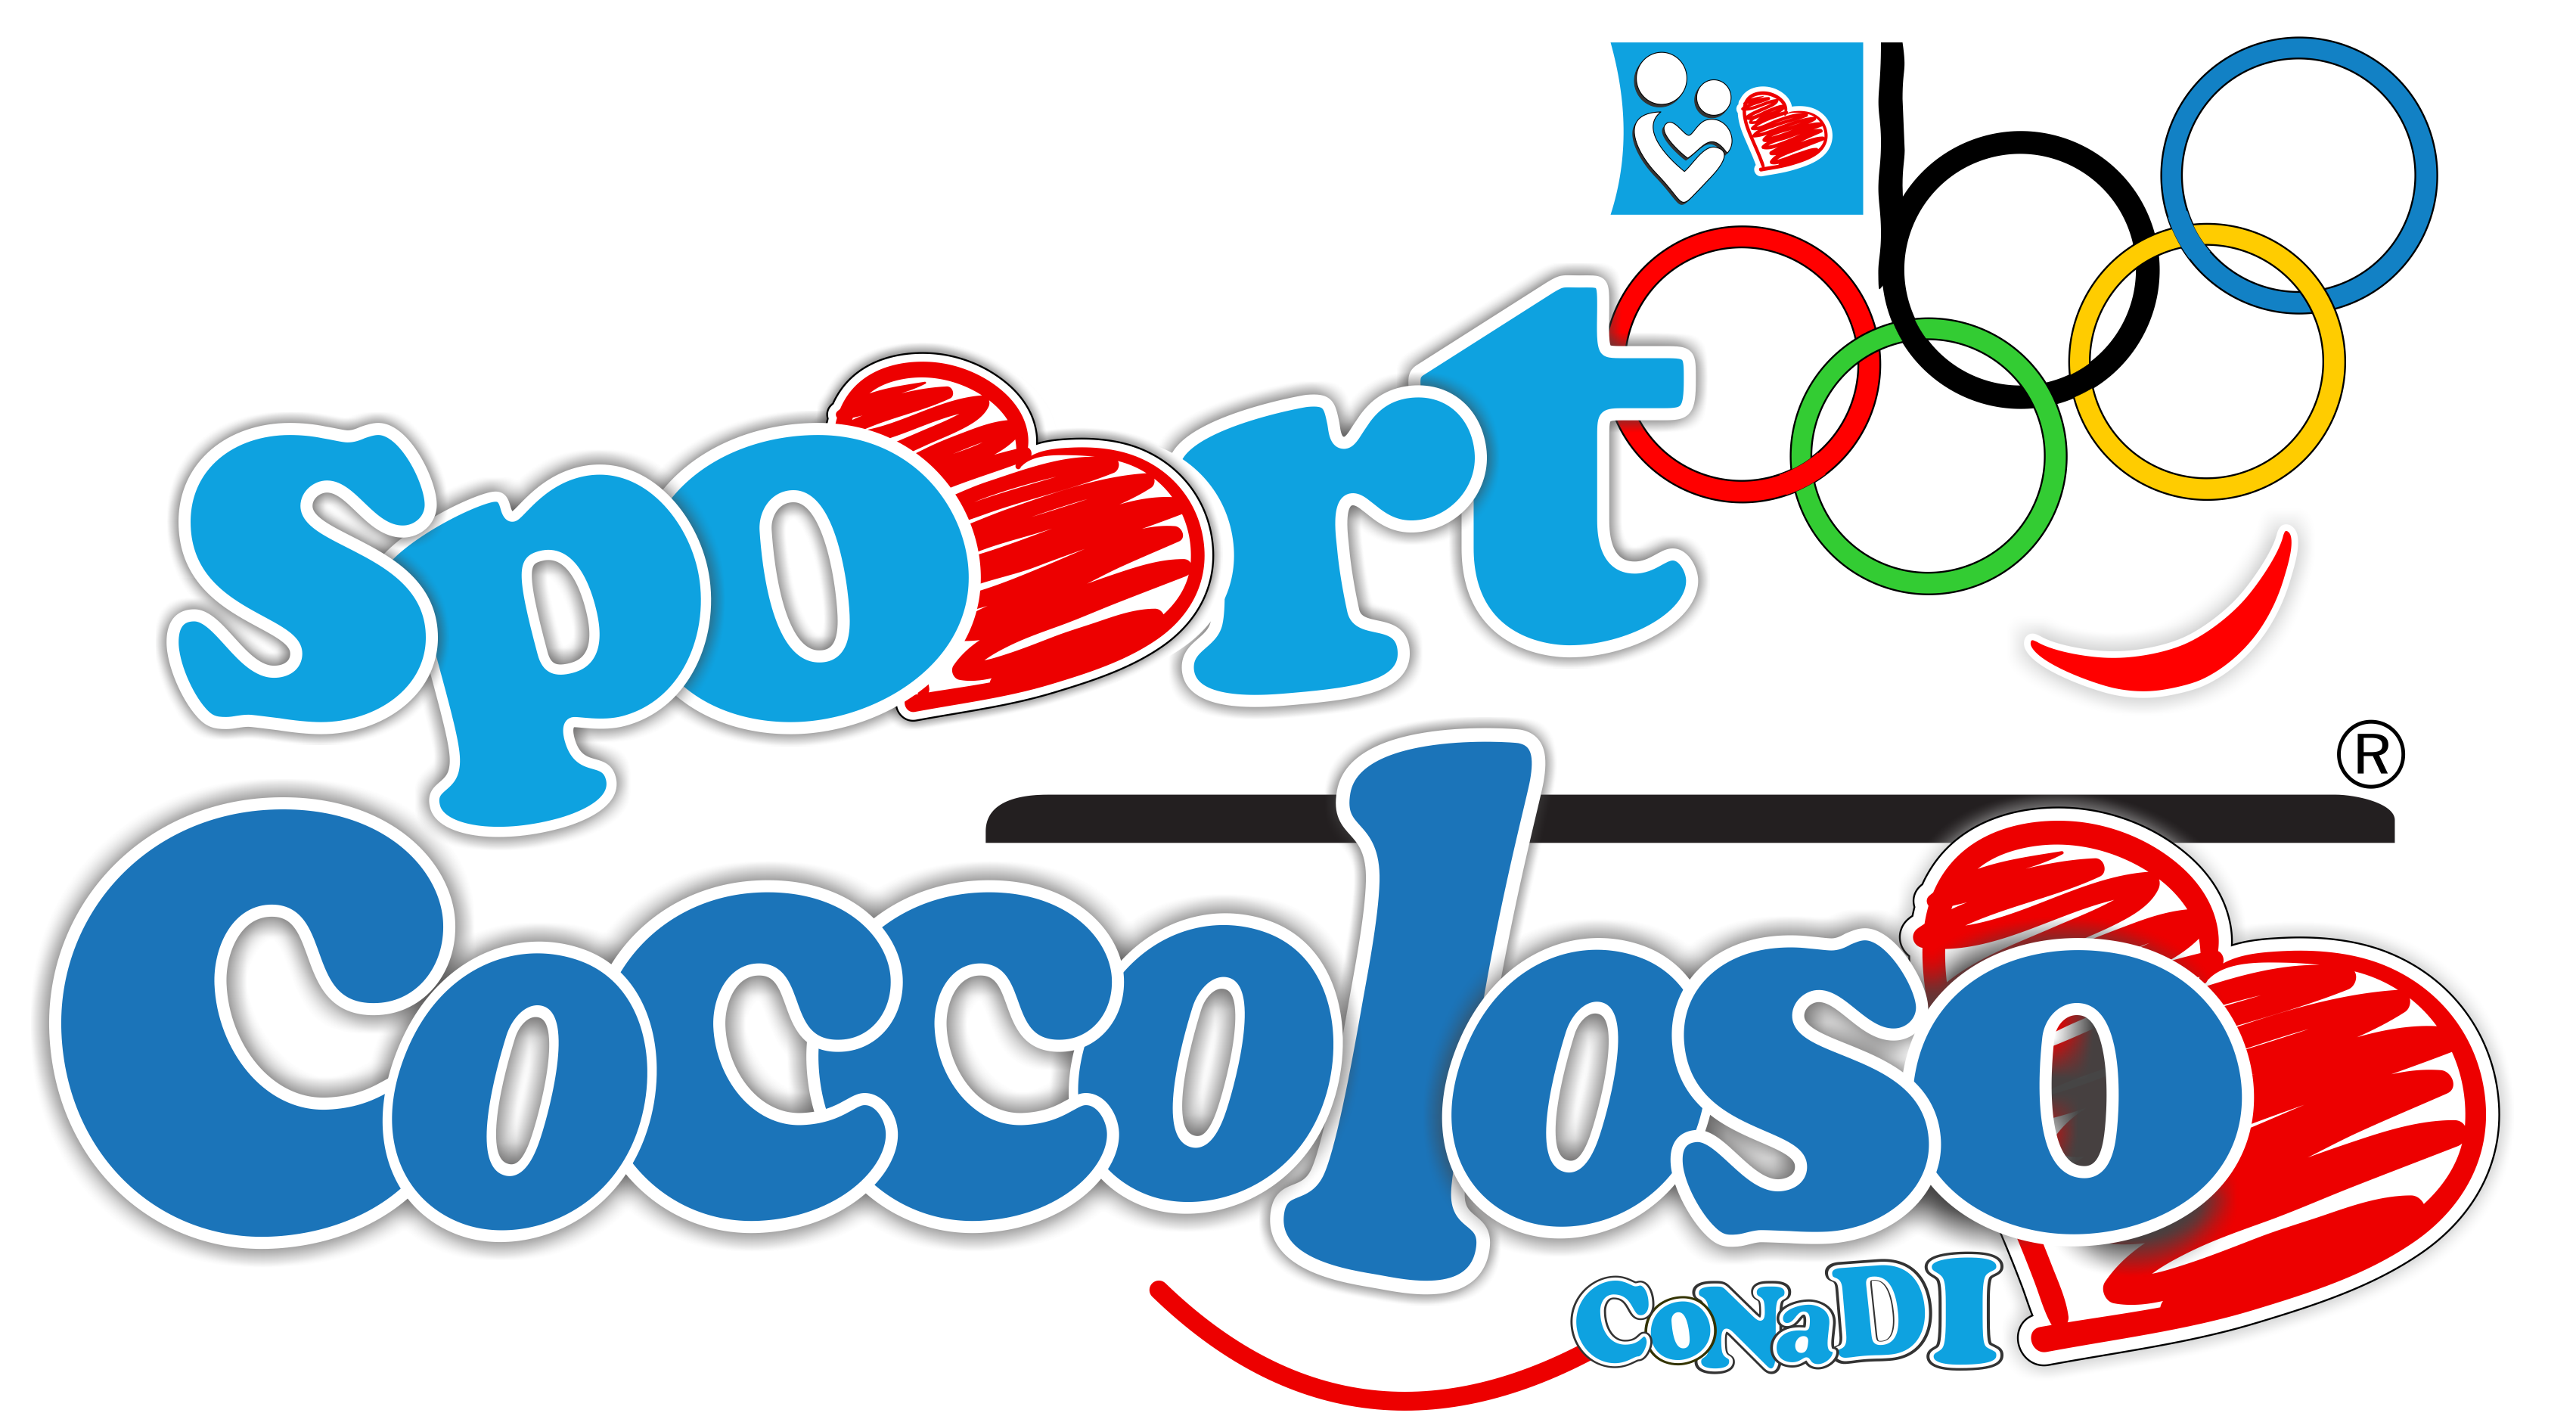 logo progetto Sport Coccoloso